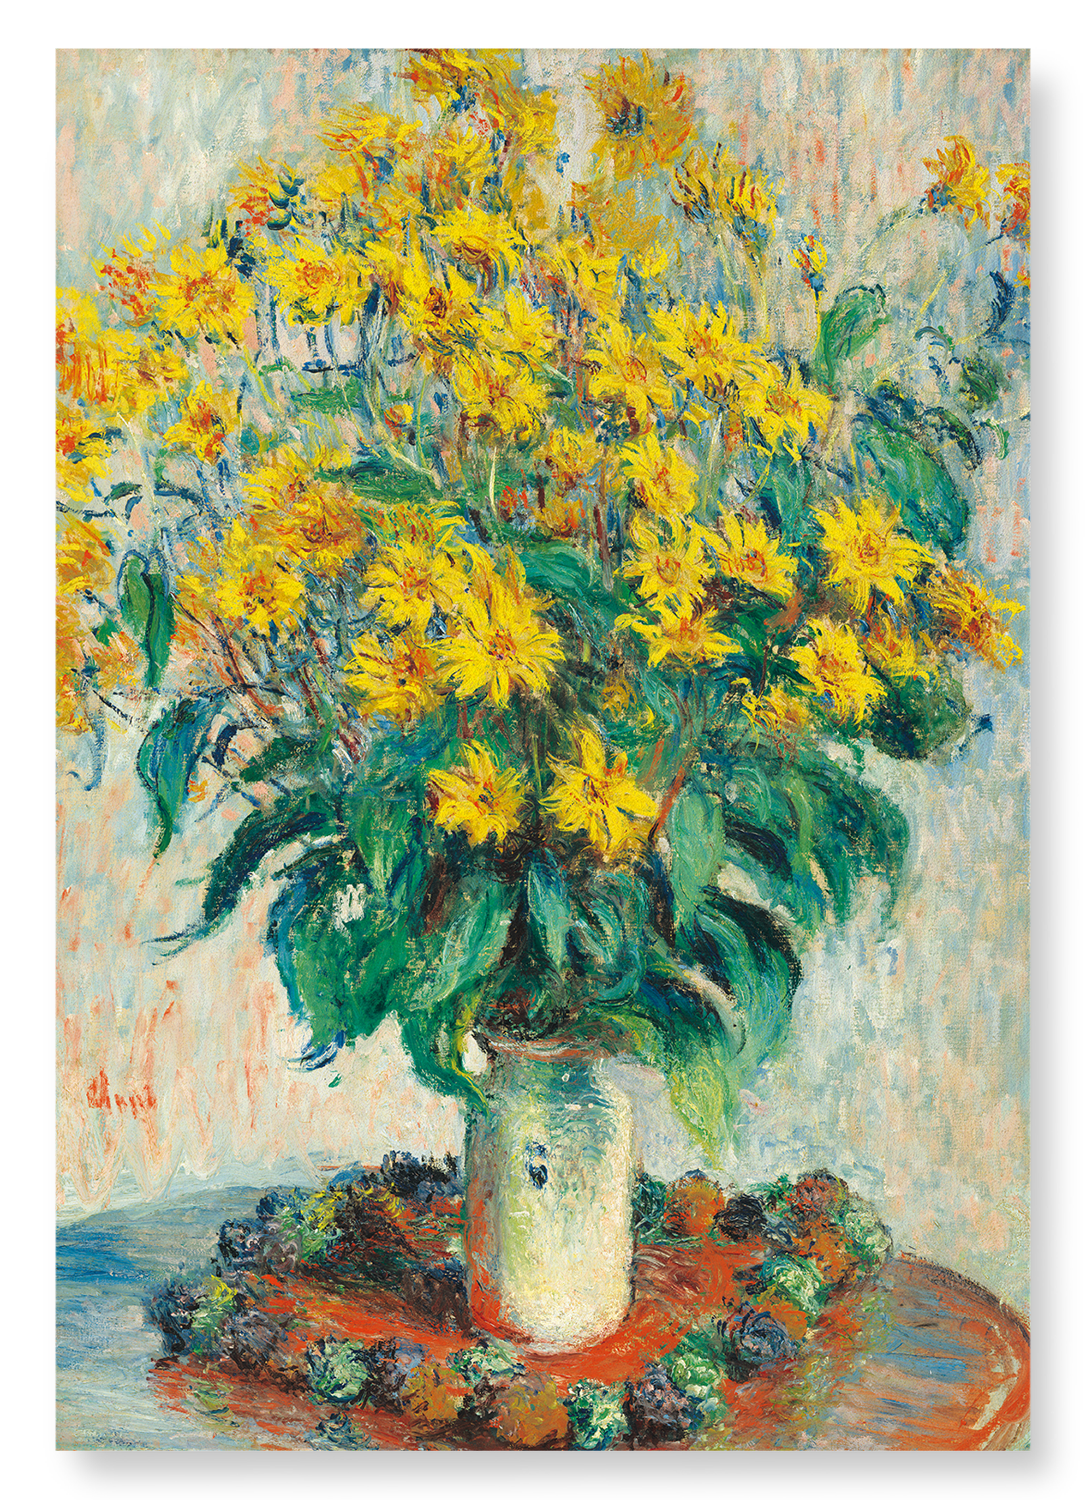 JERUSALEM ARTICHOKE FLOWERS (1880)